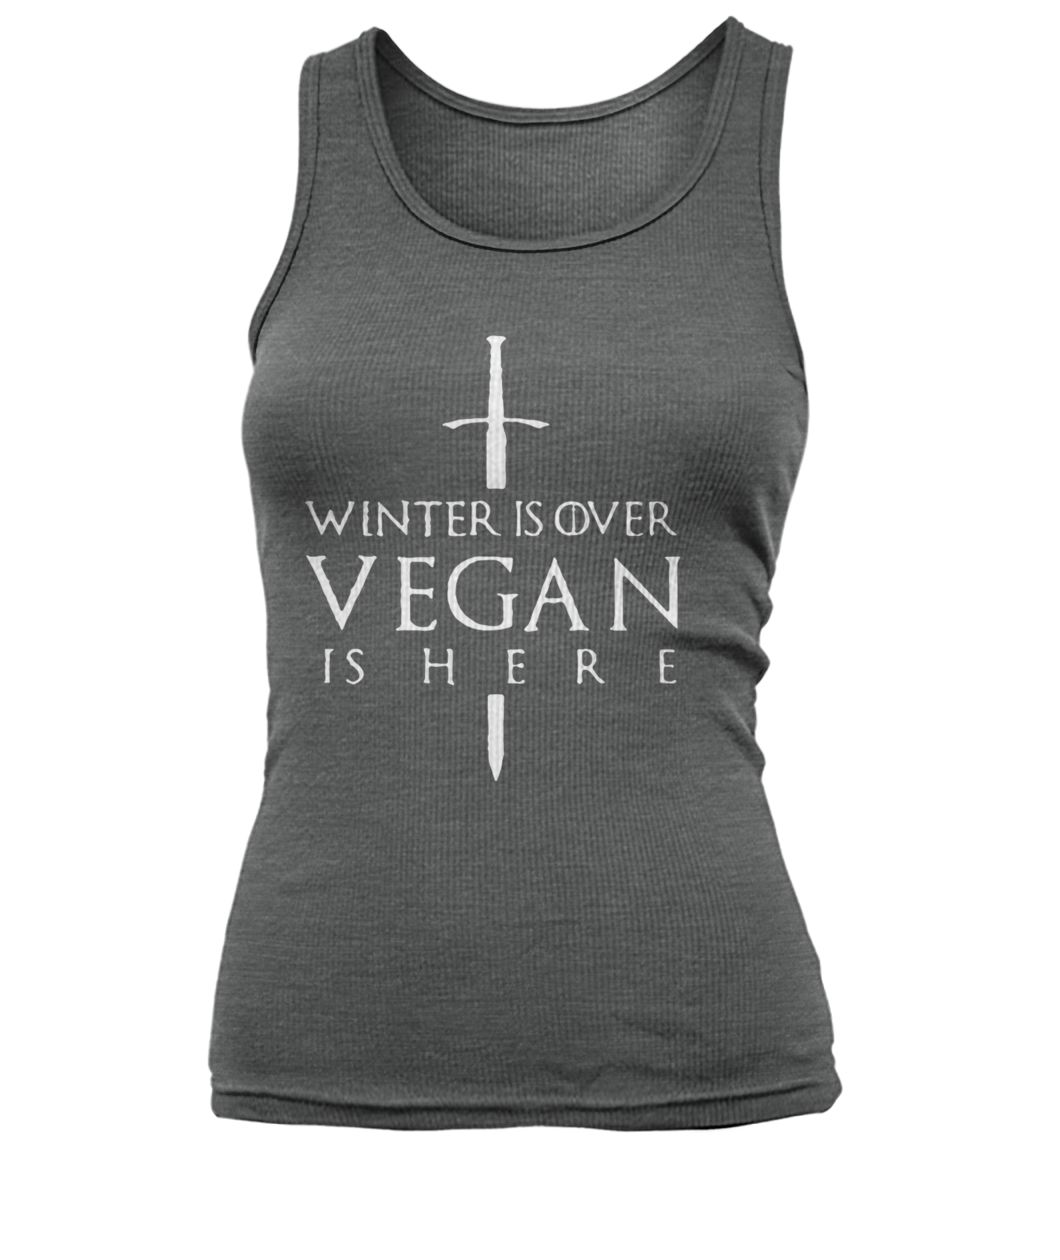 Game of thrones winter is over vegan is here women's tank top